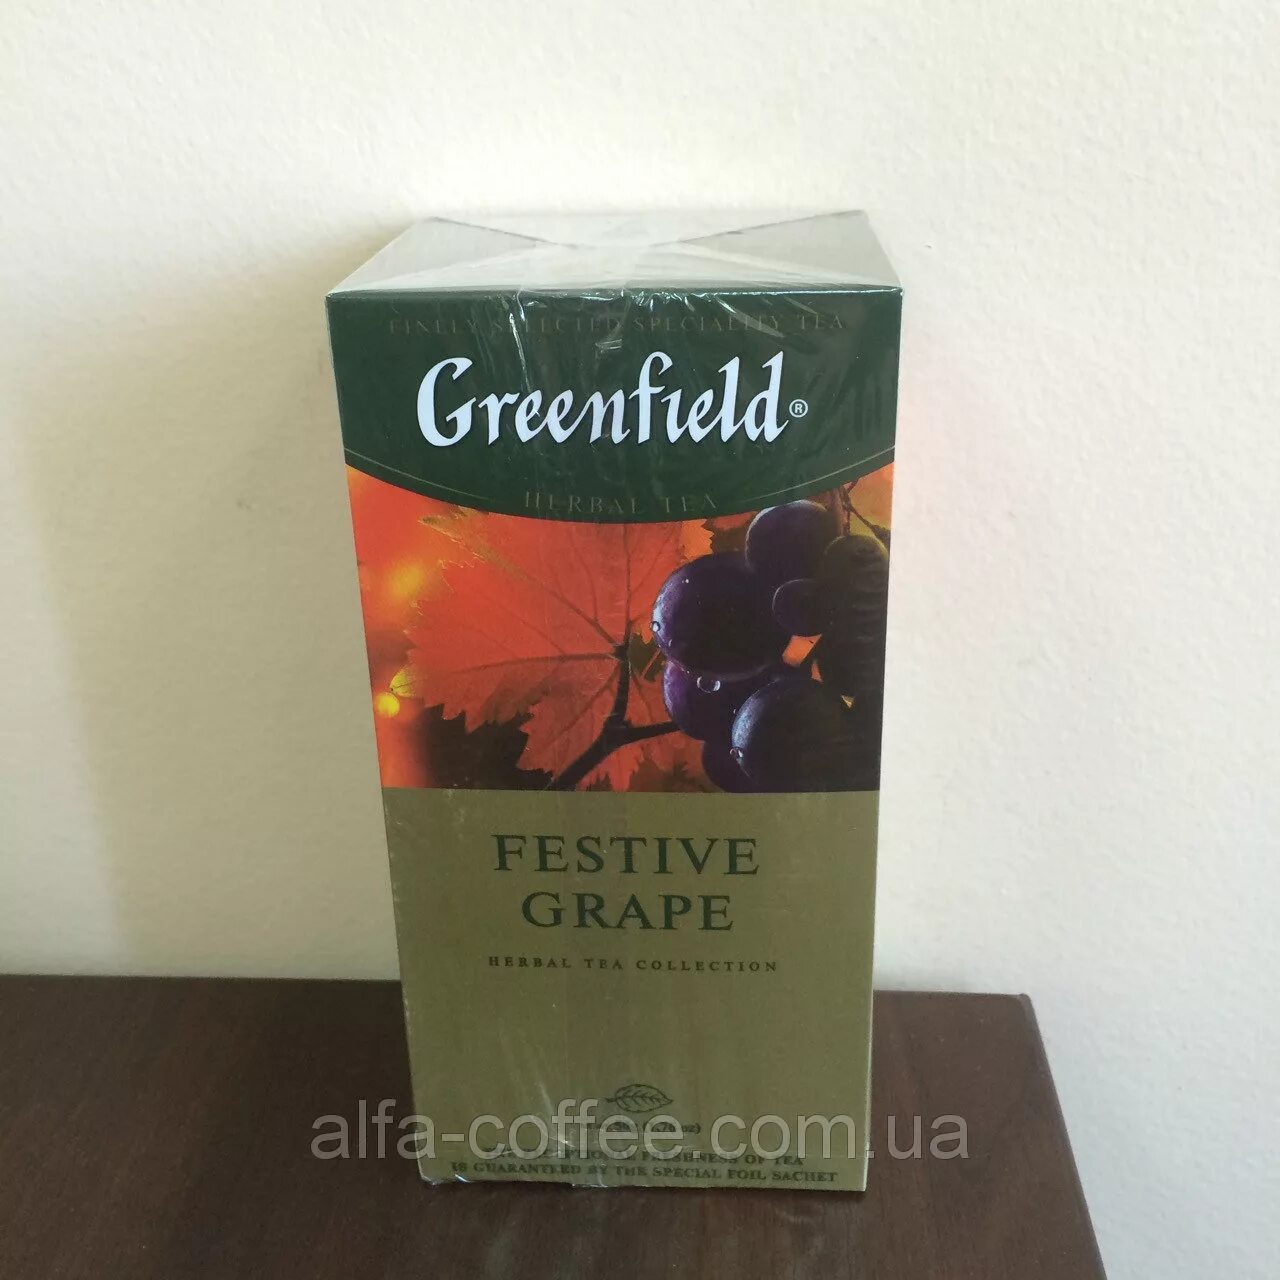 Гринфилд festive grape. Чай в пакетиках Greenfield / Гринфилд festive grape (25 пак). Festive grape чай. Чай Гринфилд зеленый 25 пакетиков.